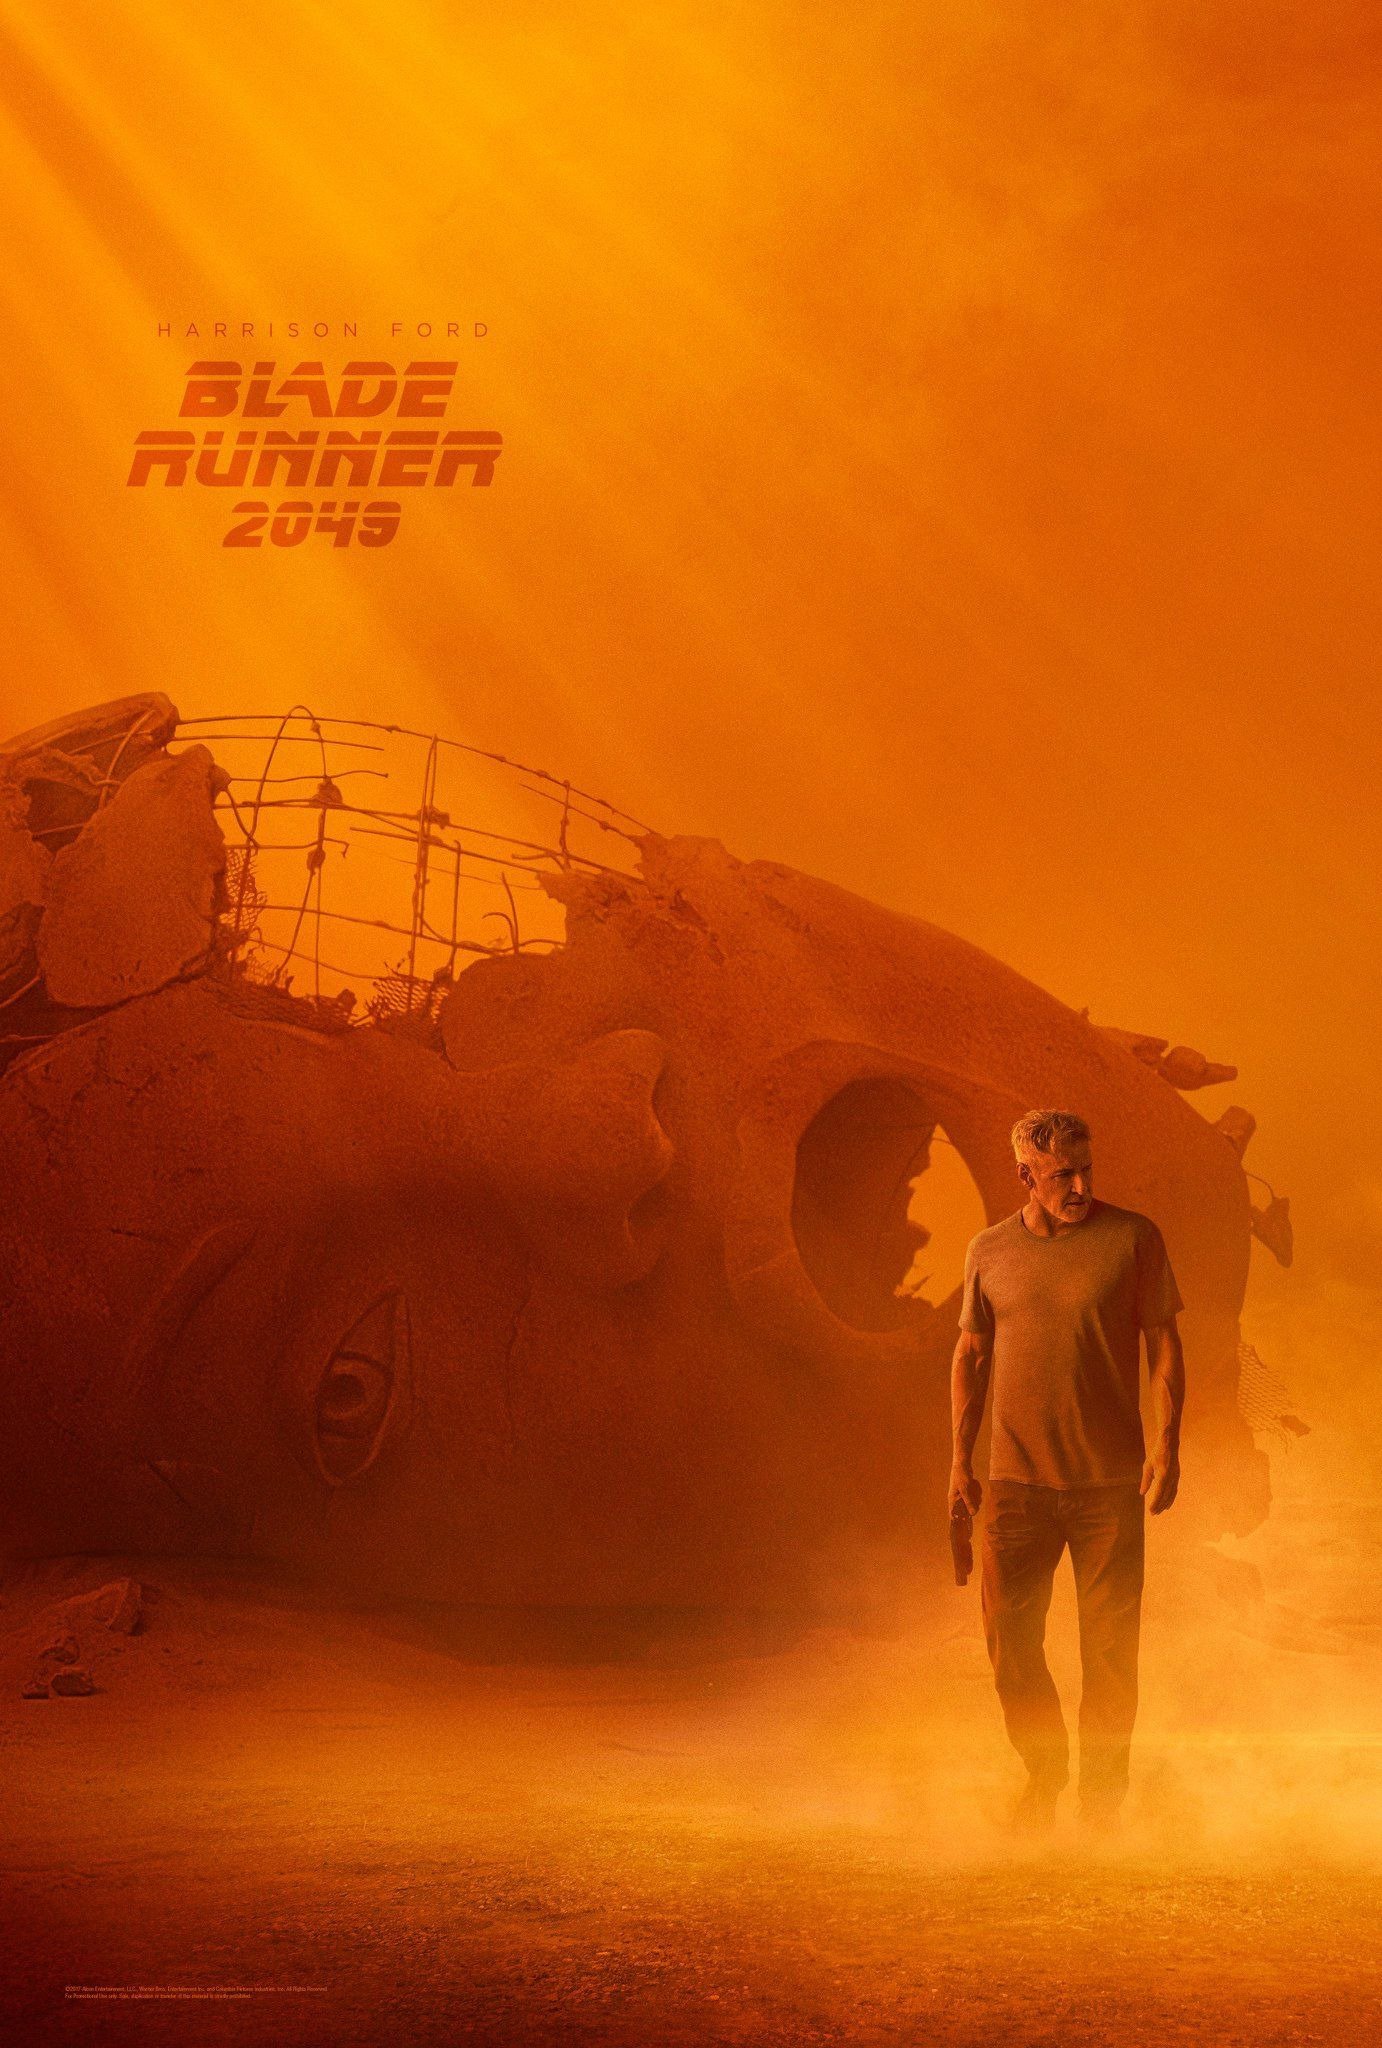 Poster pour le film Blade Runner 2049 avec Harrison Ford